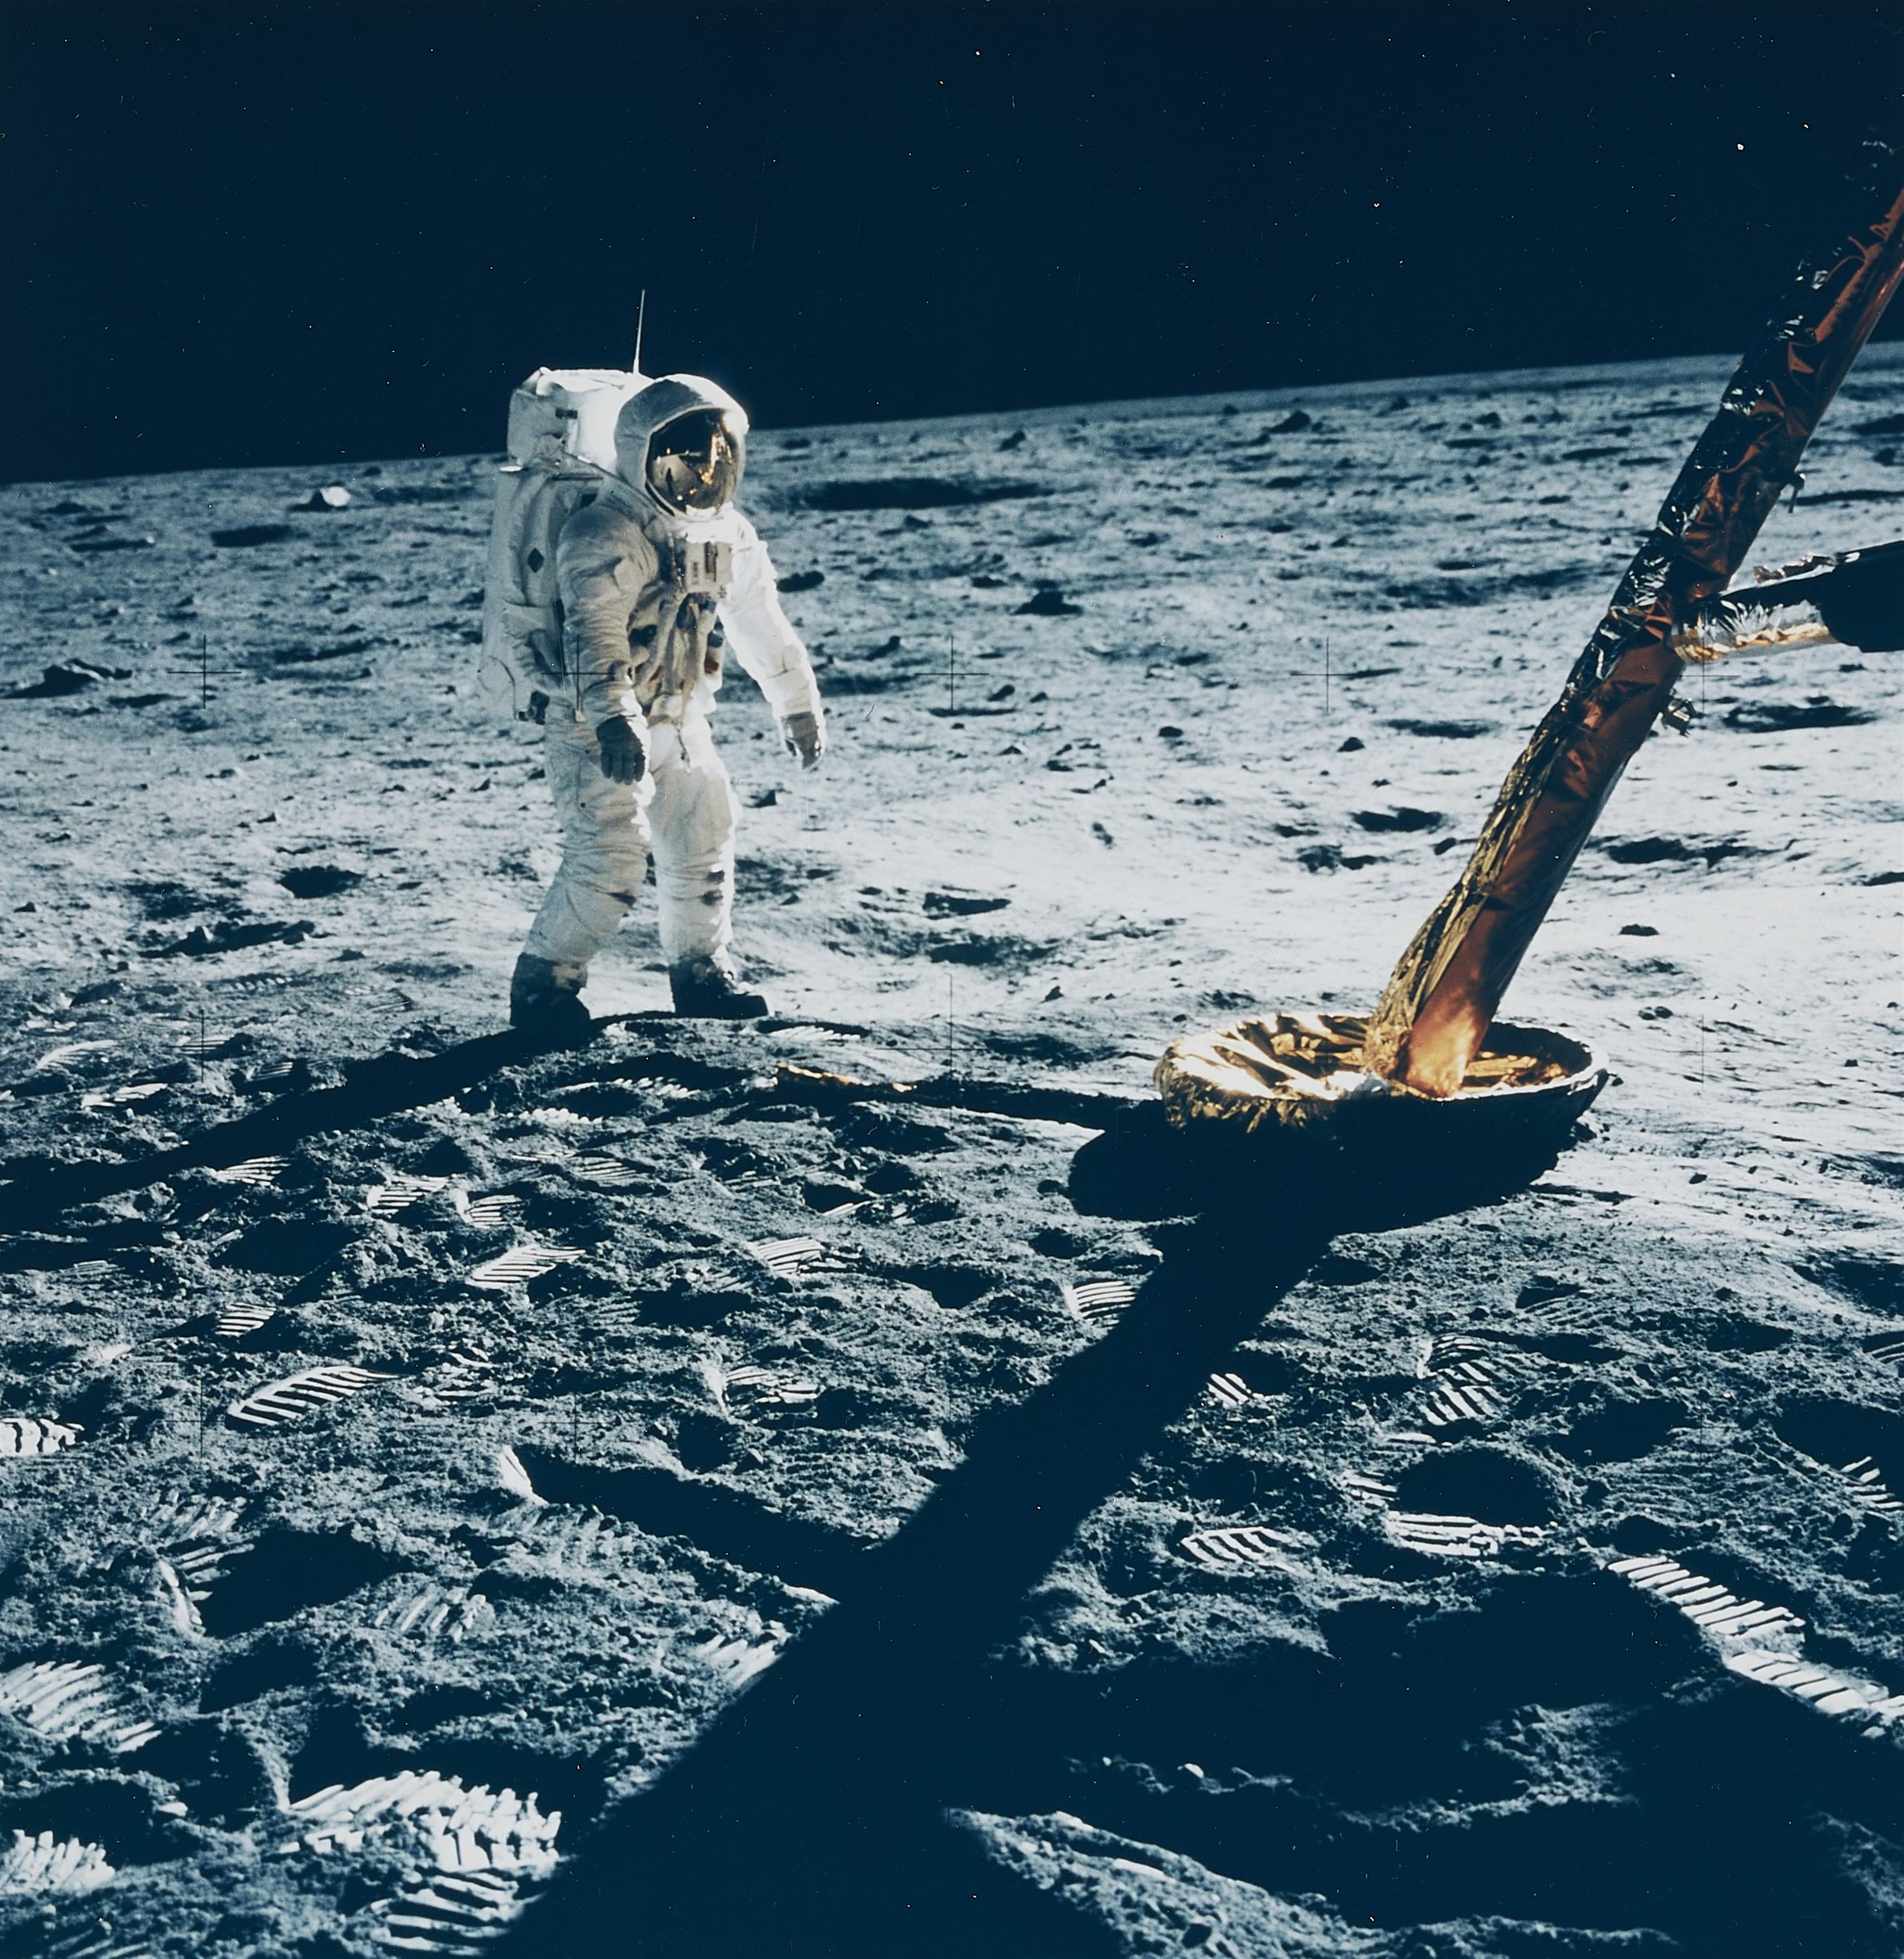 NASA - Astronaut Edwin E. Aldrin Jr. walks on the Moon near a leg of the Lunar Module, Apollo 11 - image-1